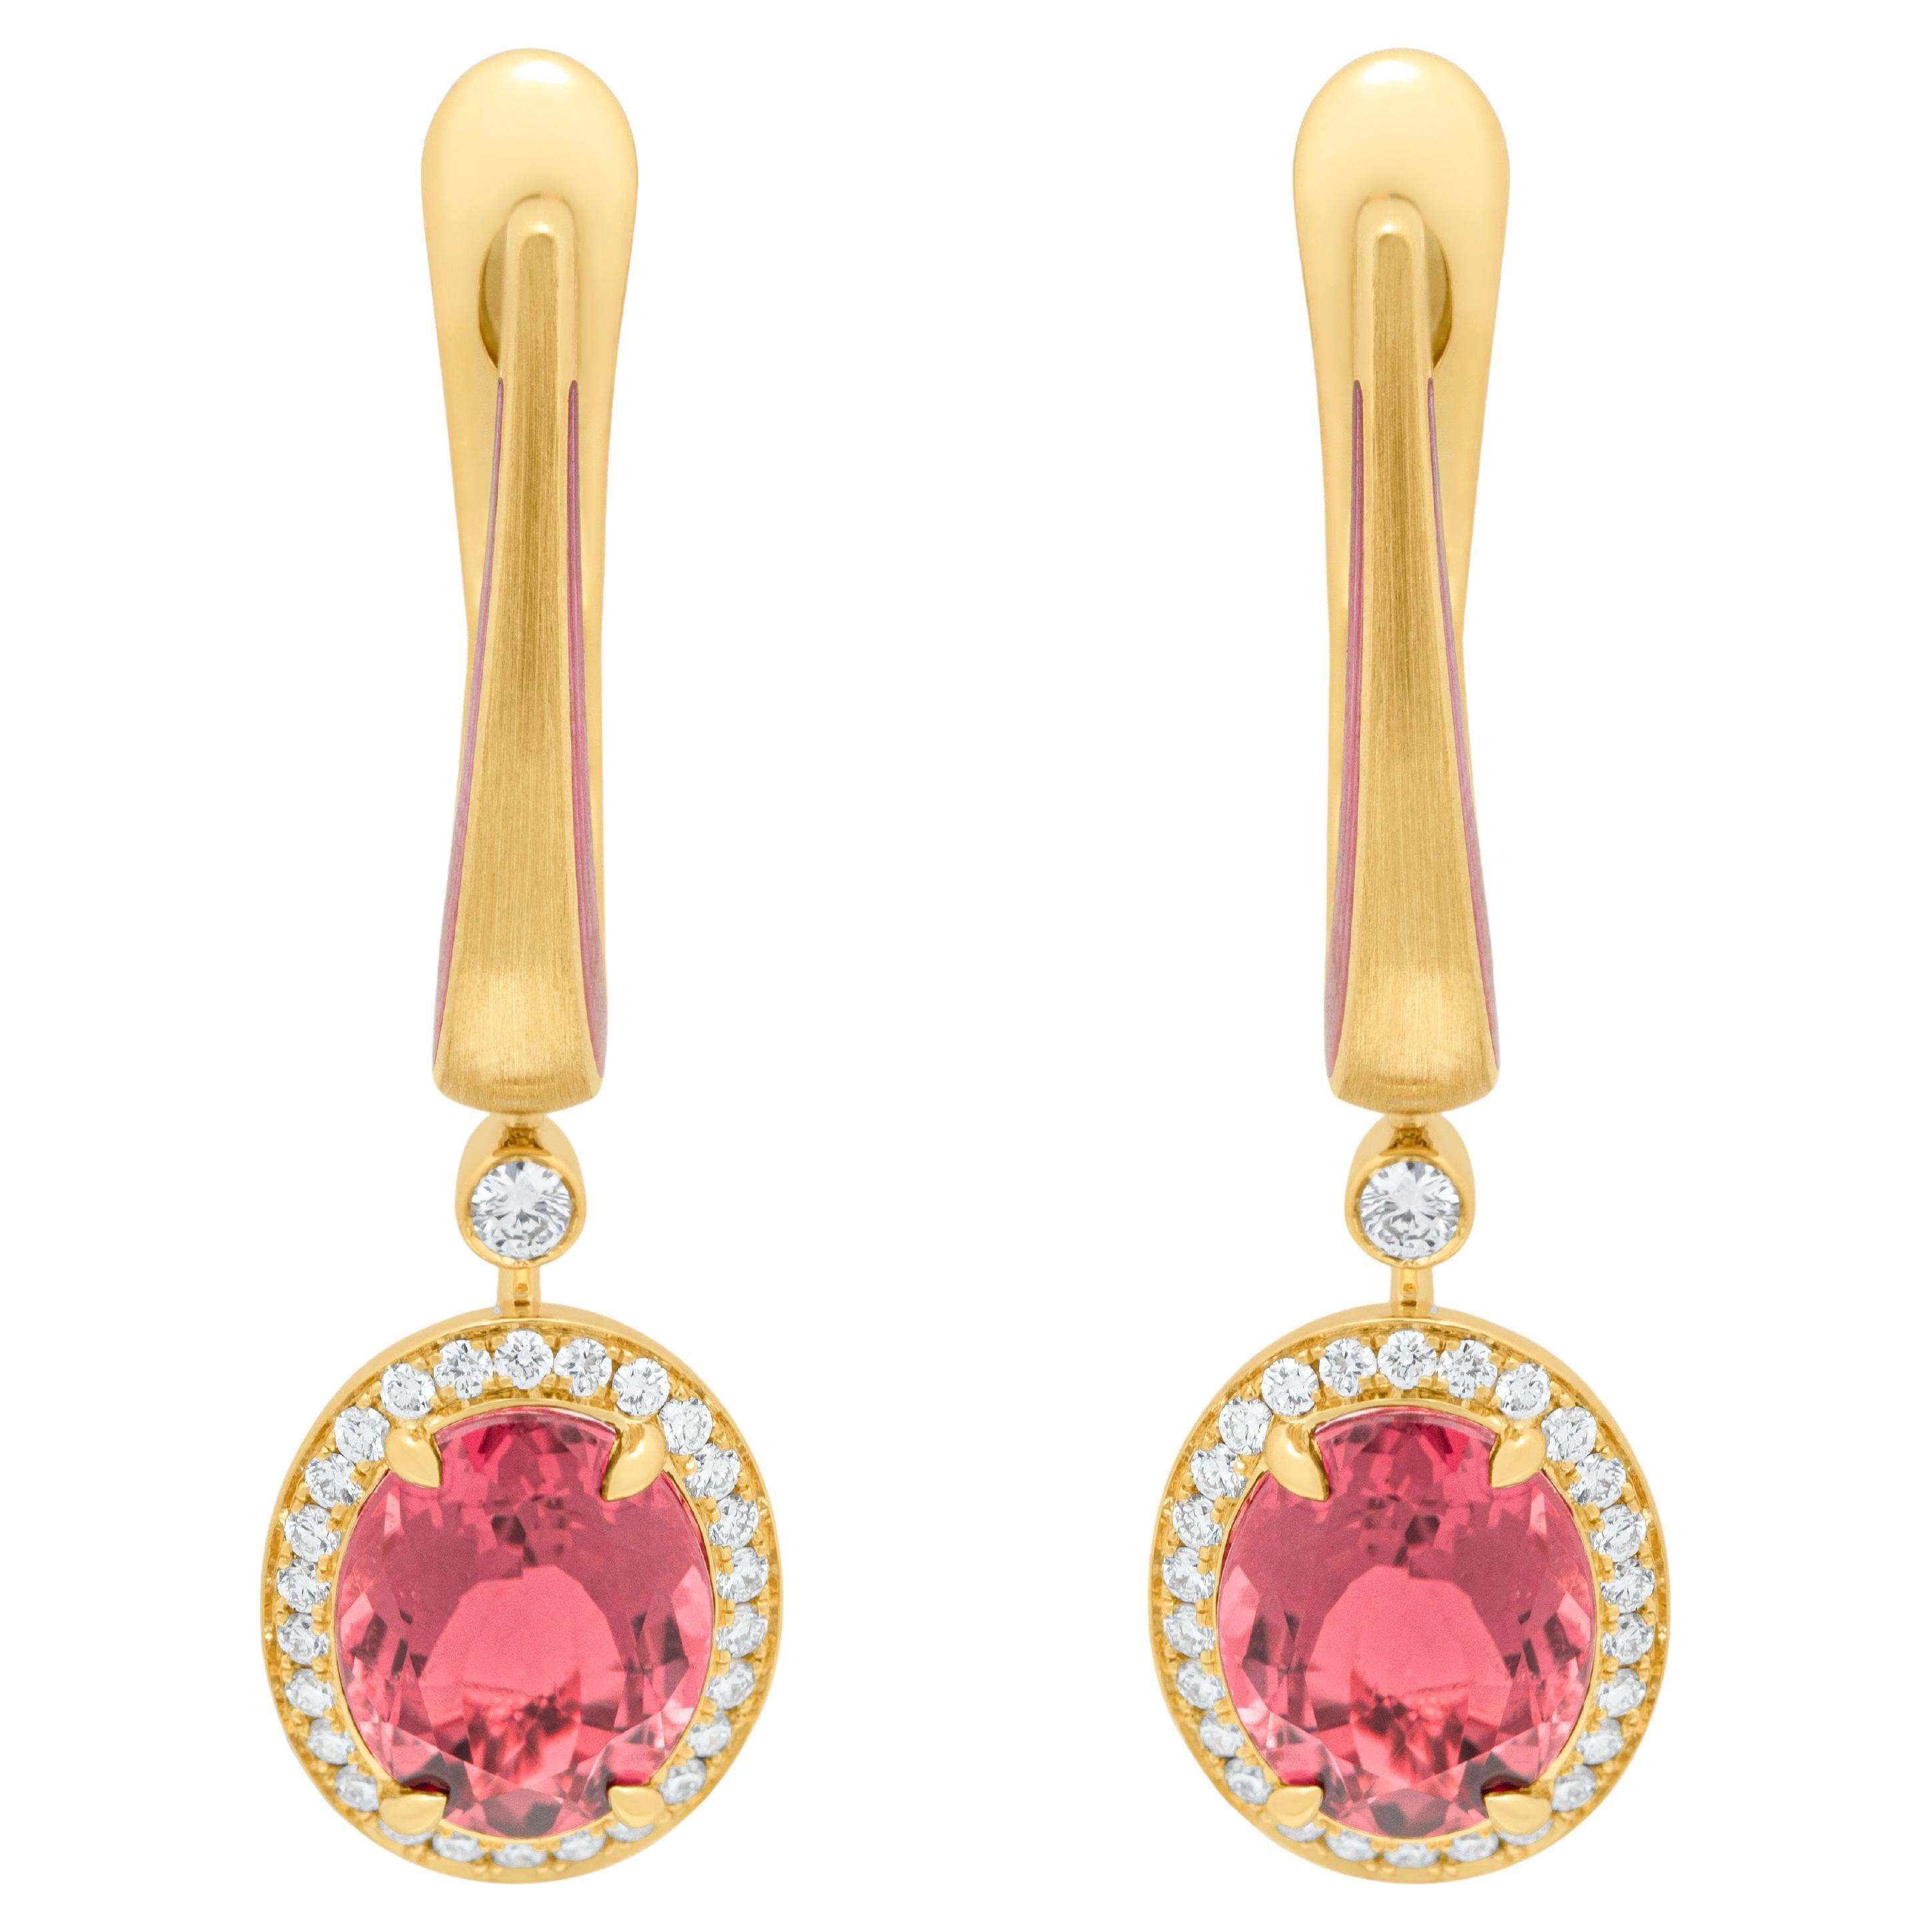 Boucles d'oreilles classiques en or jaune 18 carats avec tourmaline rose, diamants et émail